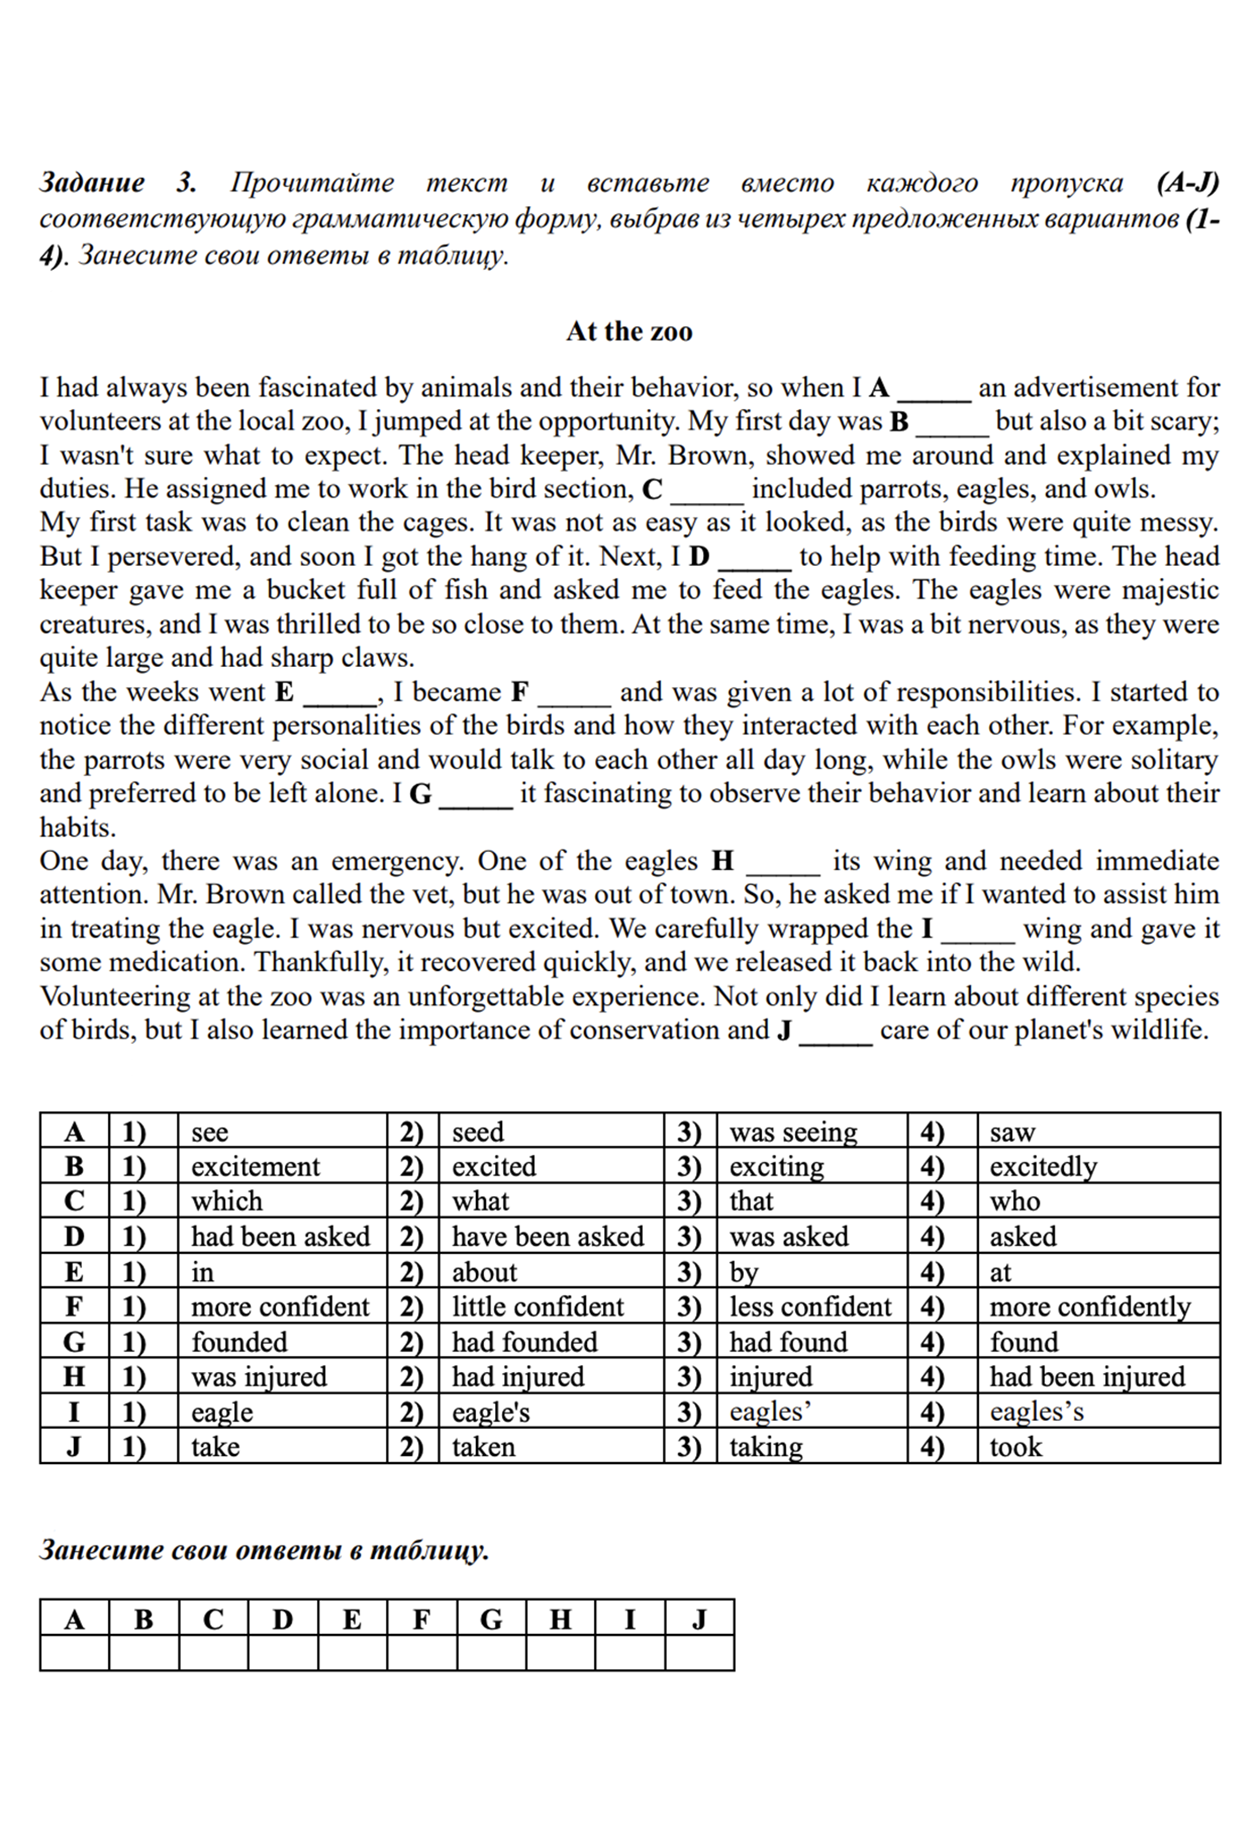 Пример задания из теста по английскому языку для 10 класса. Источник: сайт лицея НИУ ВШЭ